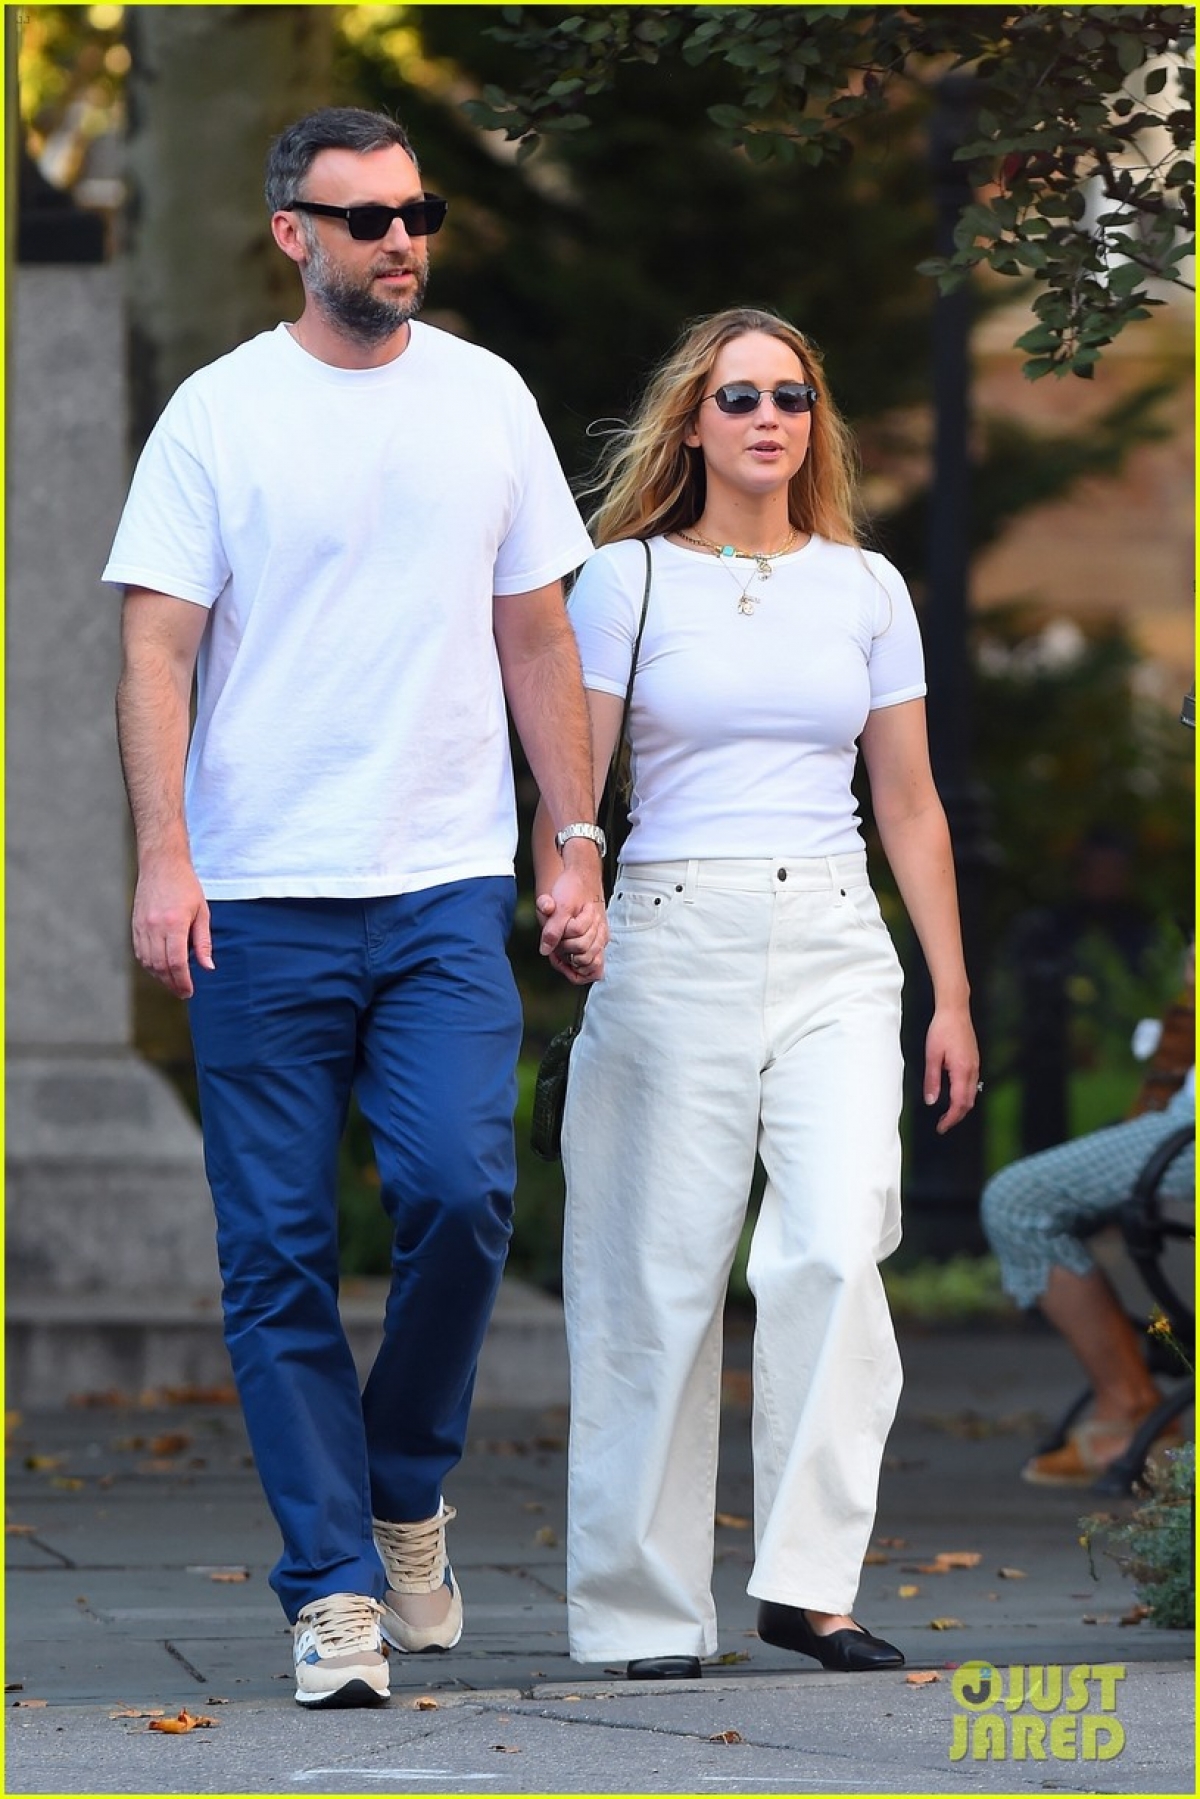 Vợ chồng Jennifer Lawrence diện đồ đồng điệu, tình tứ đi dạo trong công viên - Ảnh 5.